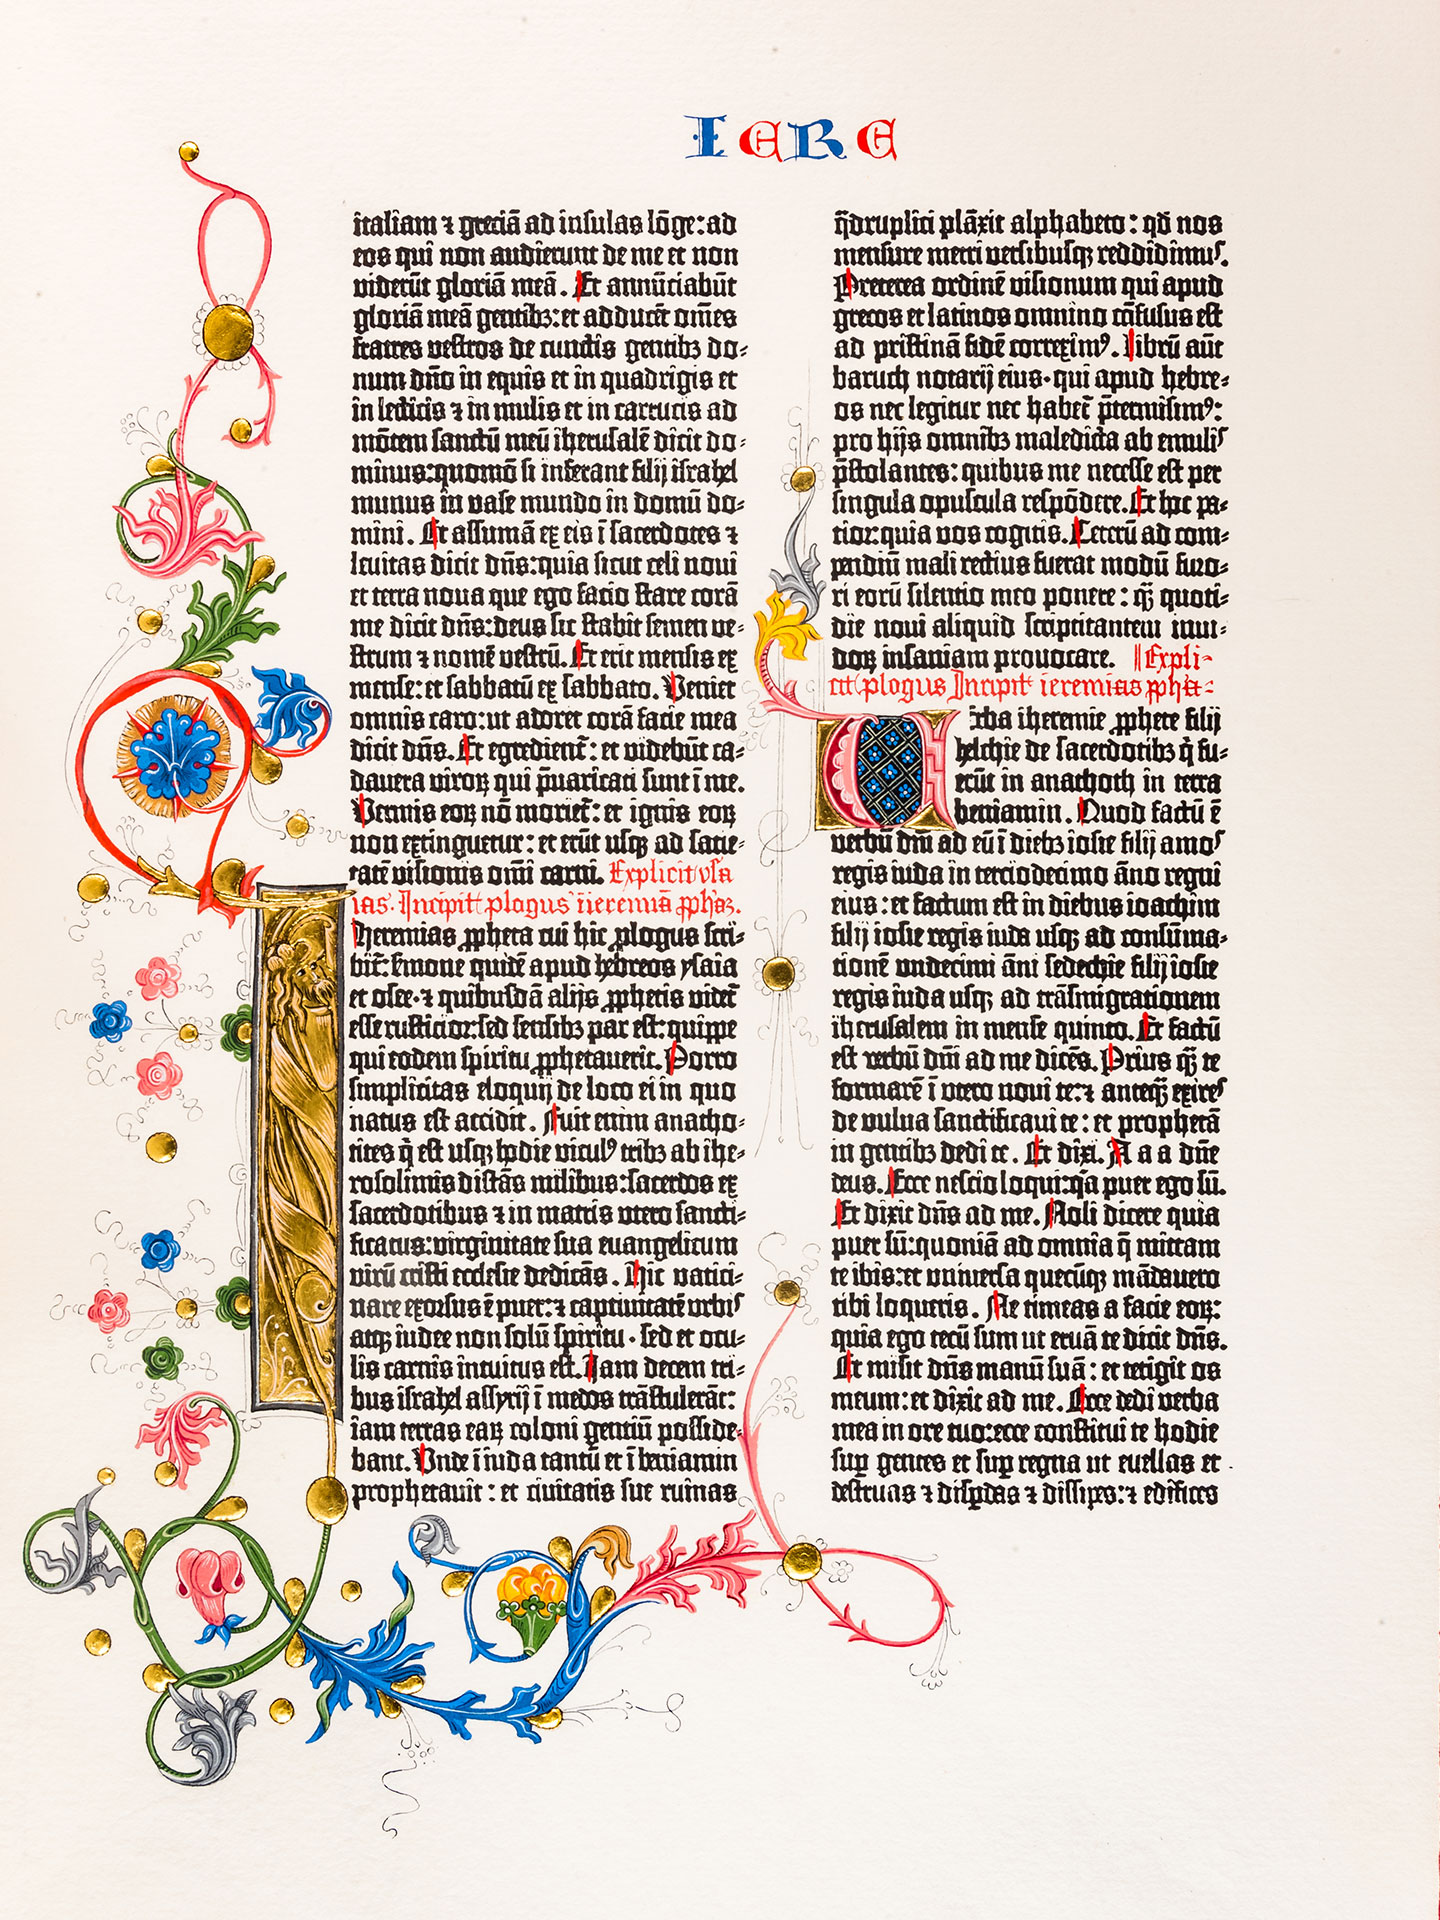 Das Buch Jeremia. Prachtseite Berliner Gutenberg-Bibel